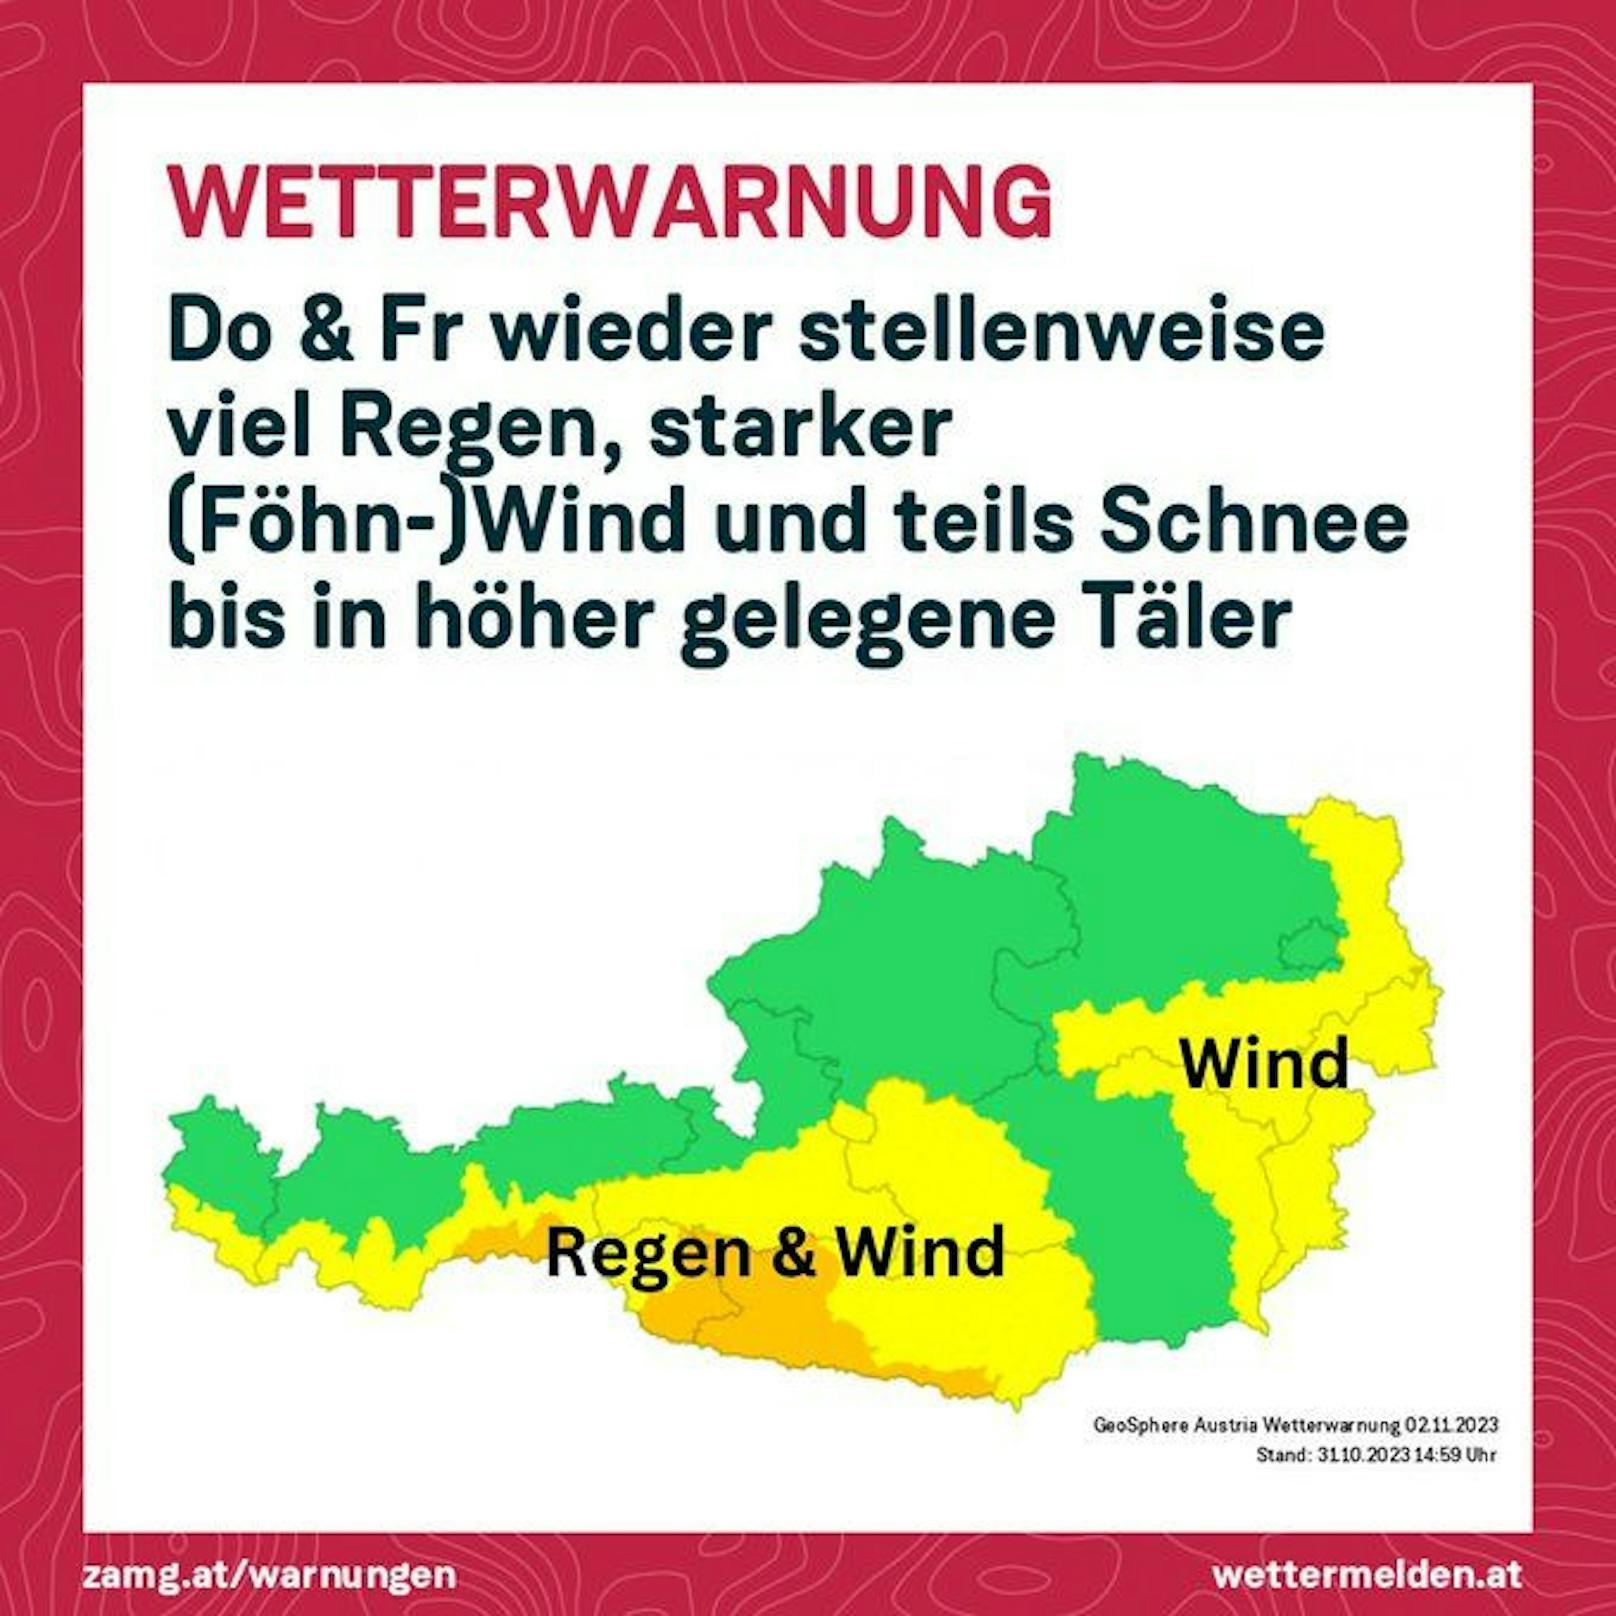 Wetterwarnung der GeoSphere Austria für 2. und 3. November 2023.